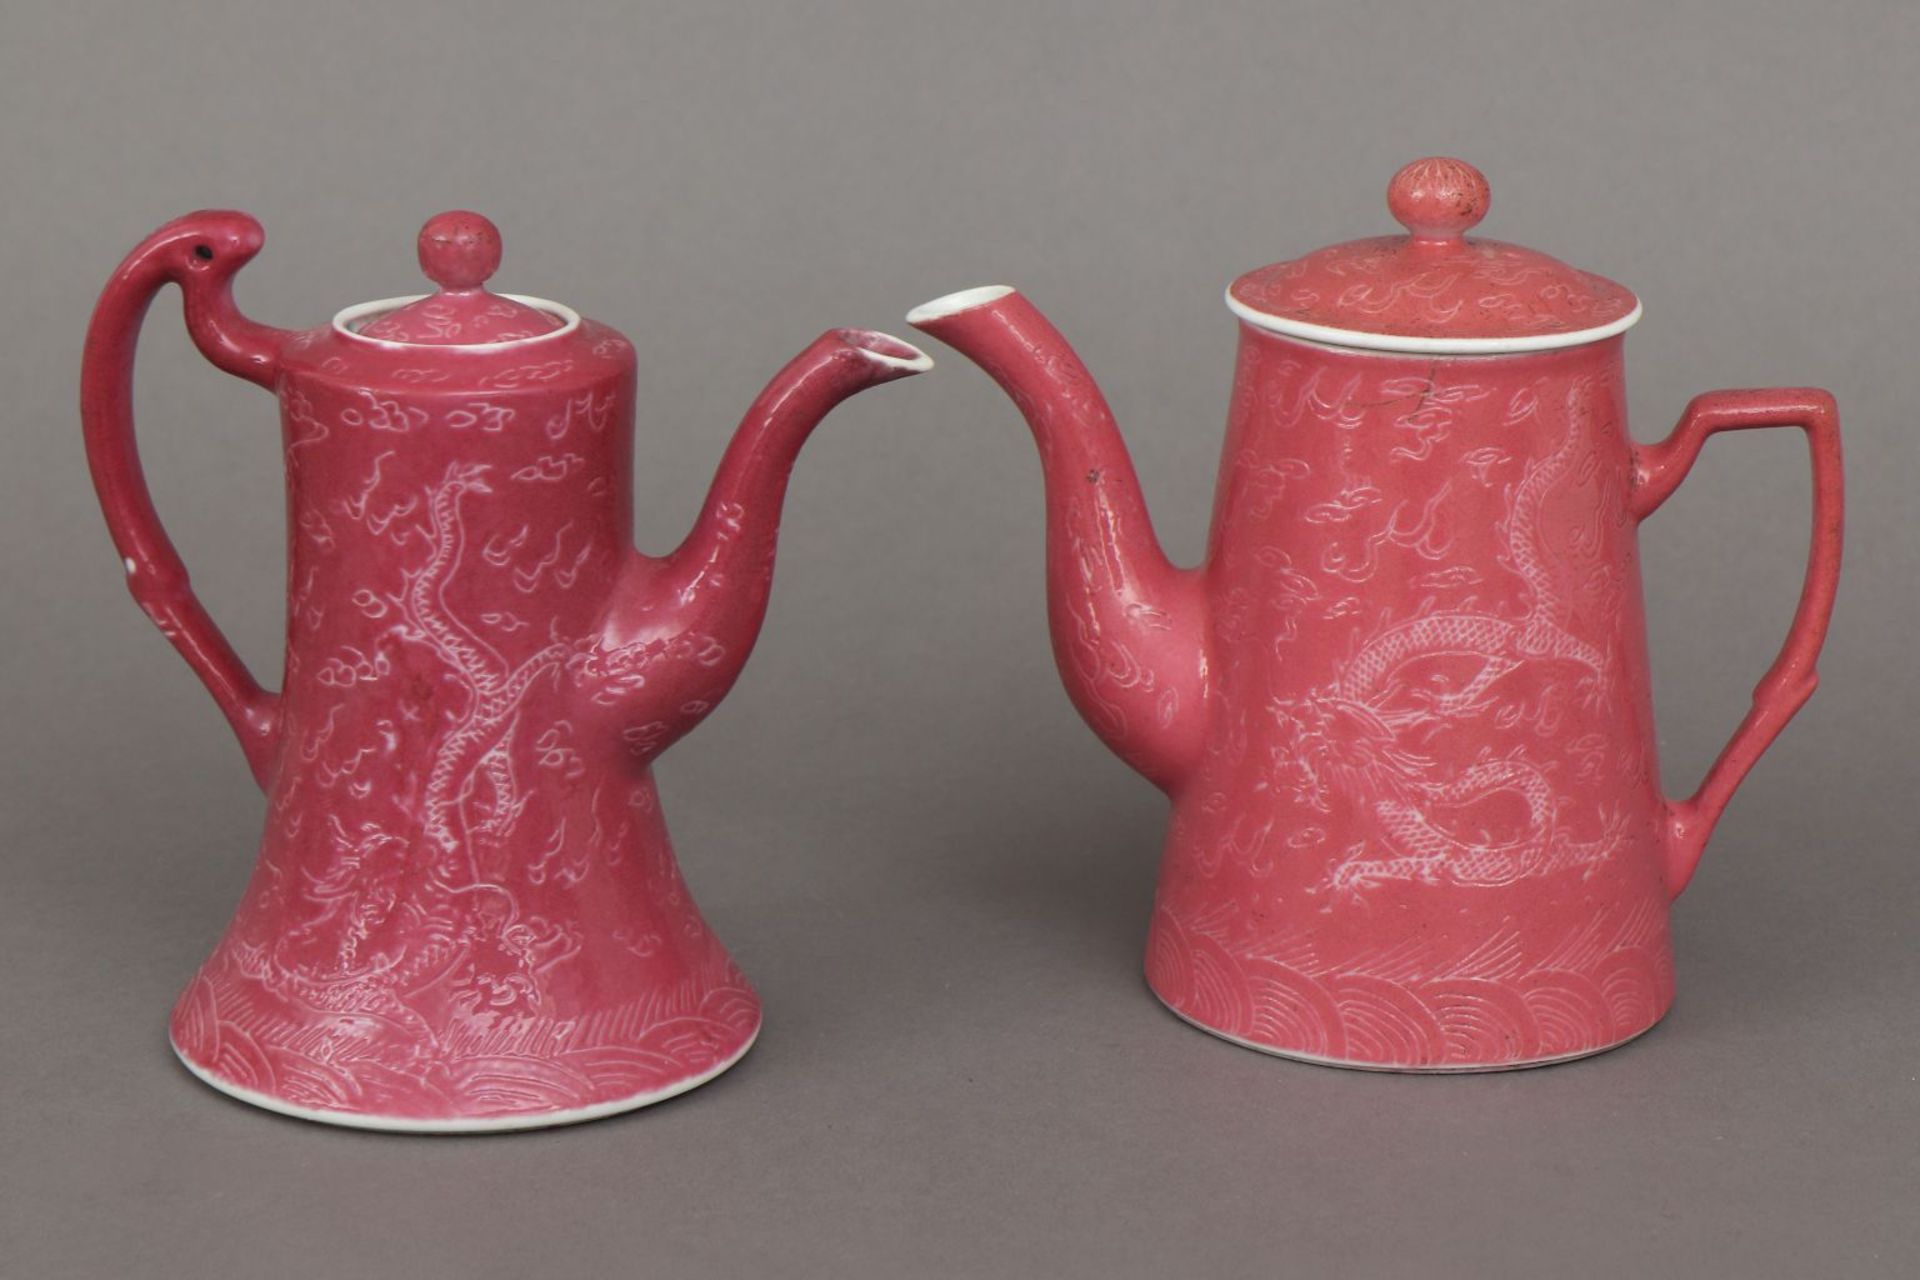 2 chinesische Porzellankannen mit rosafarbener Glasurunterschiedliche Formen und Ausführungen,